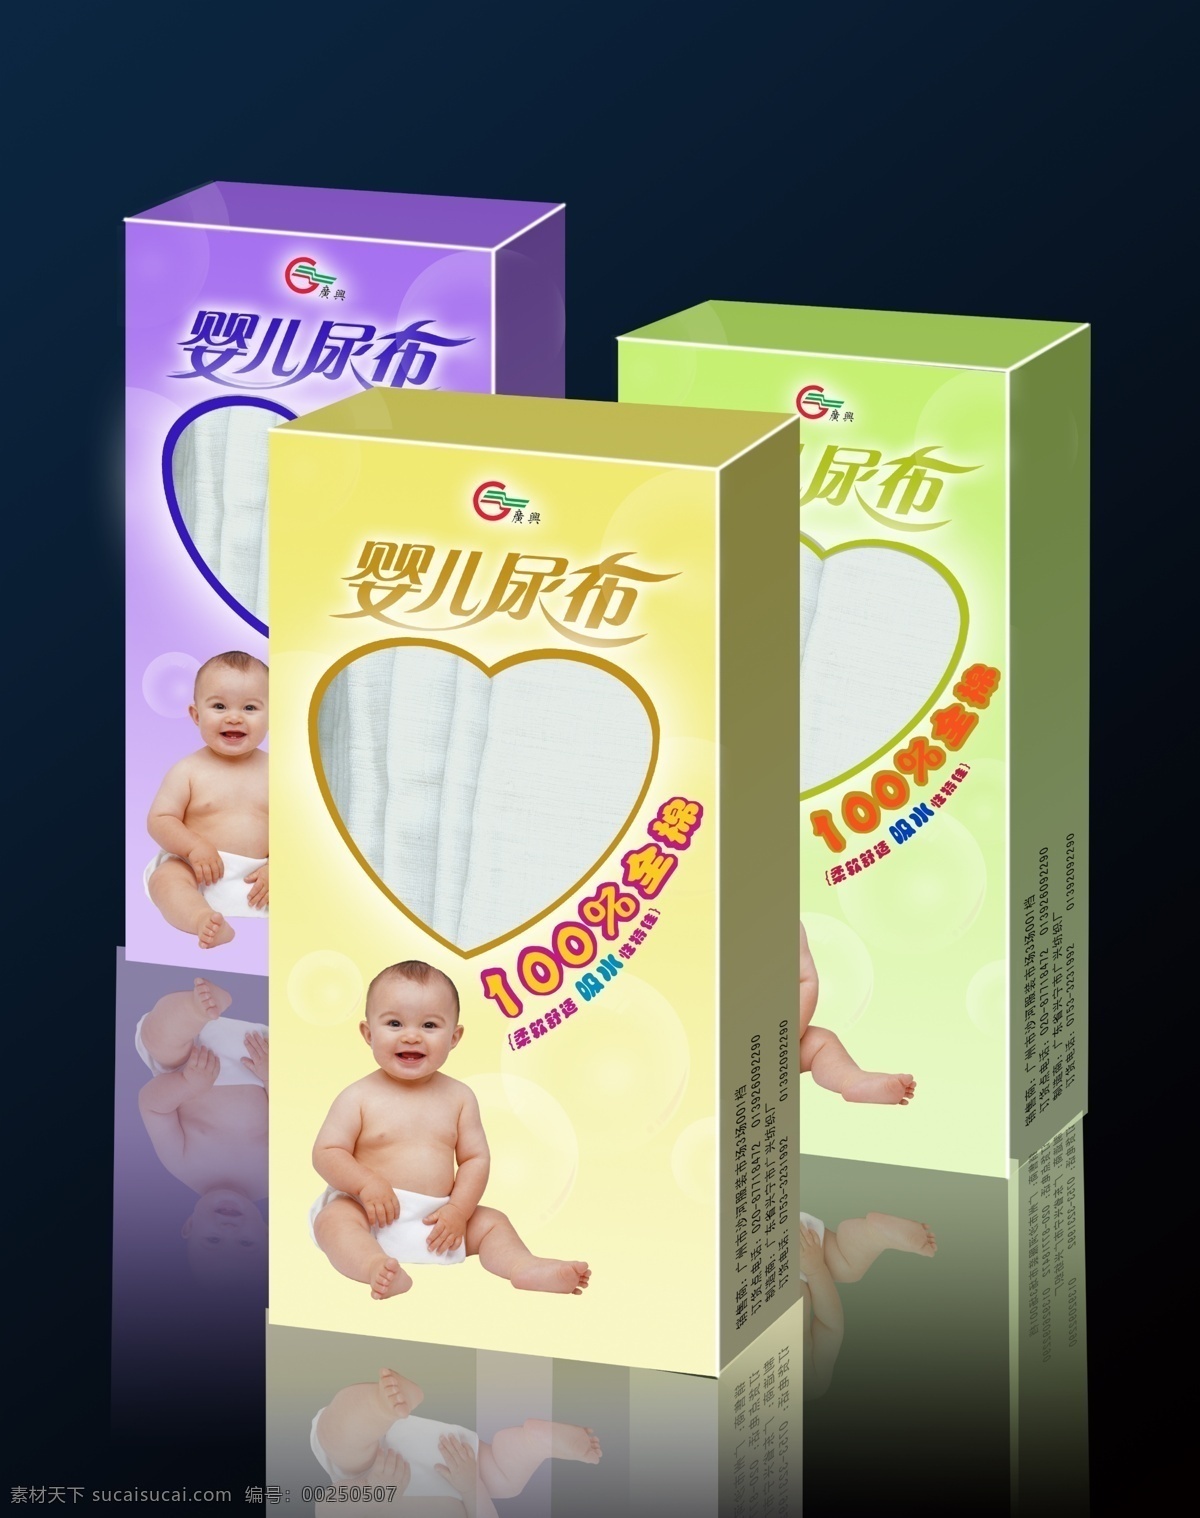 婴儿 尿布 包装 立体 婴儿尿布包装 三 原创设计 原创包装设计